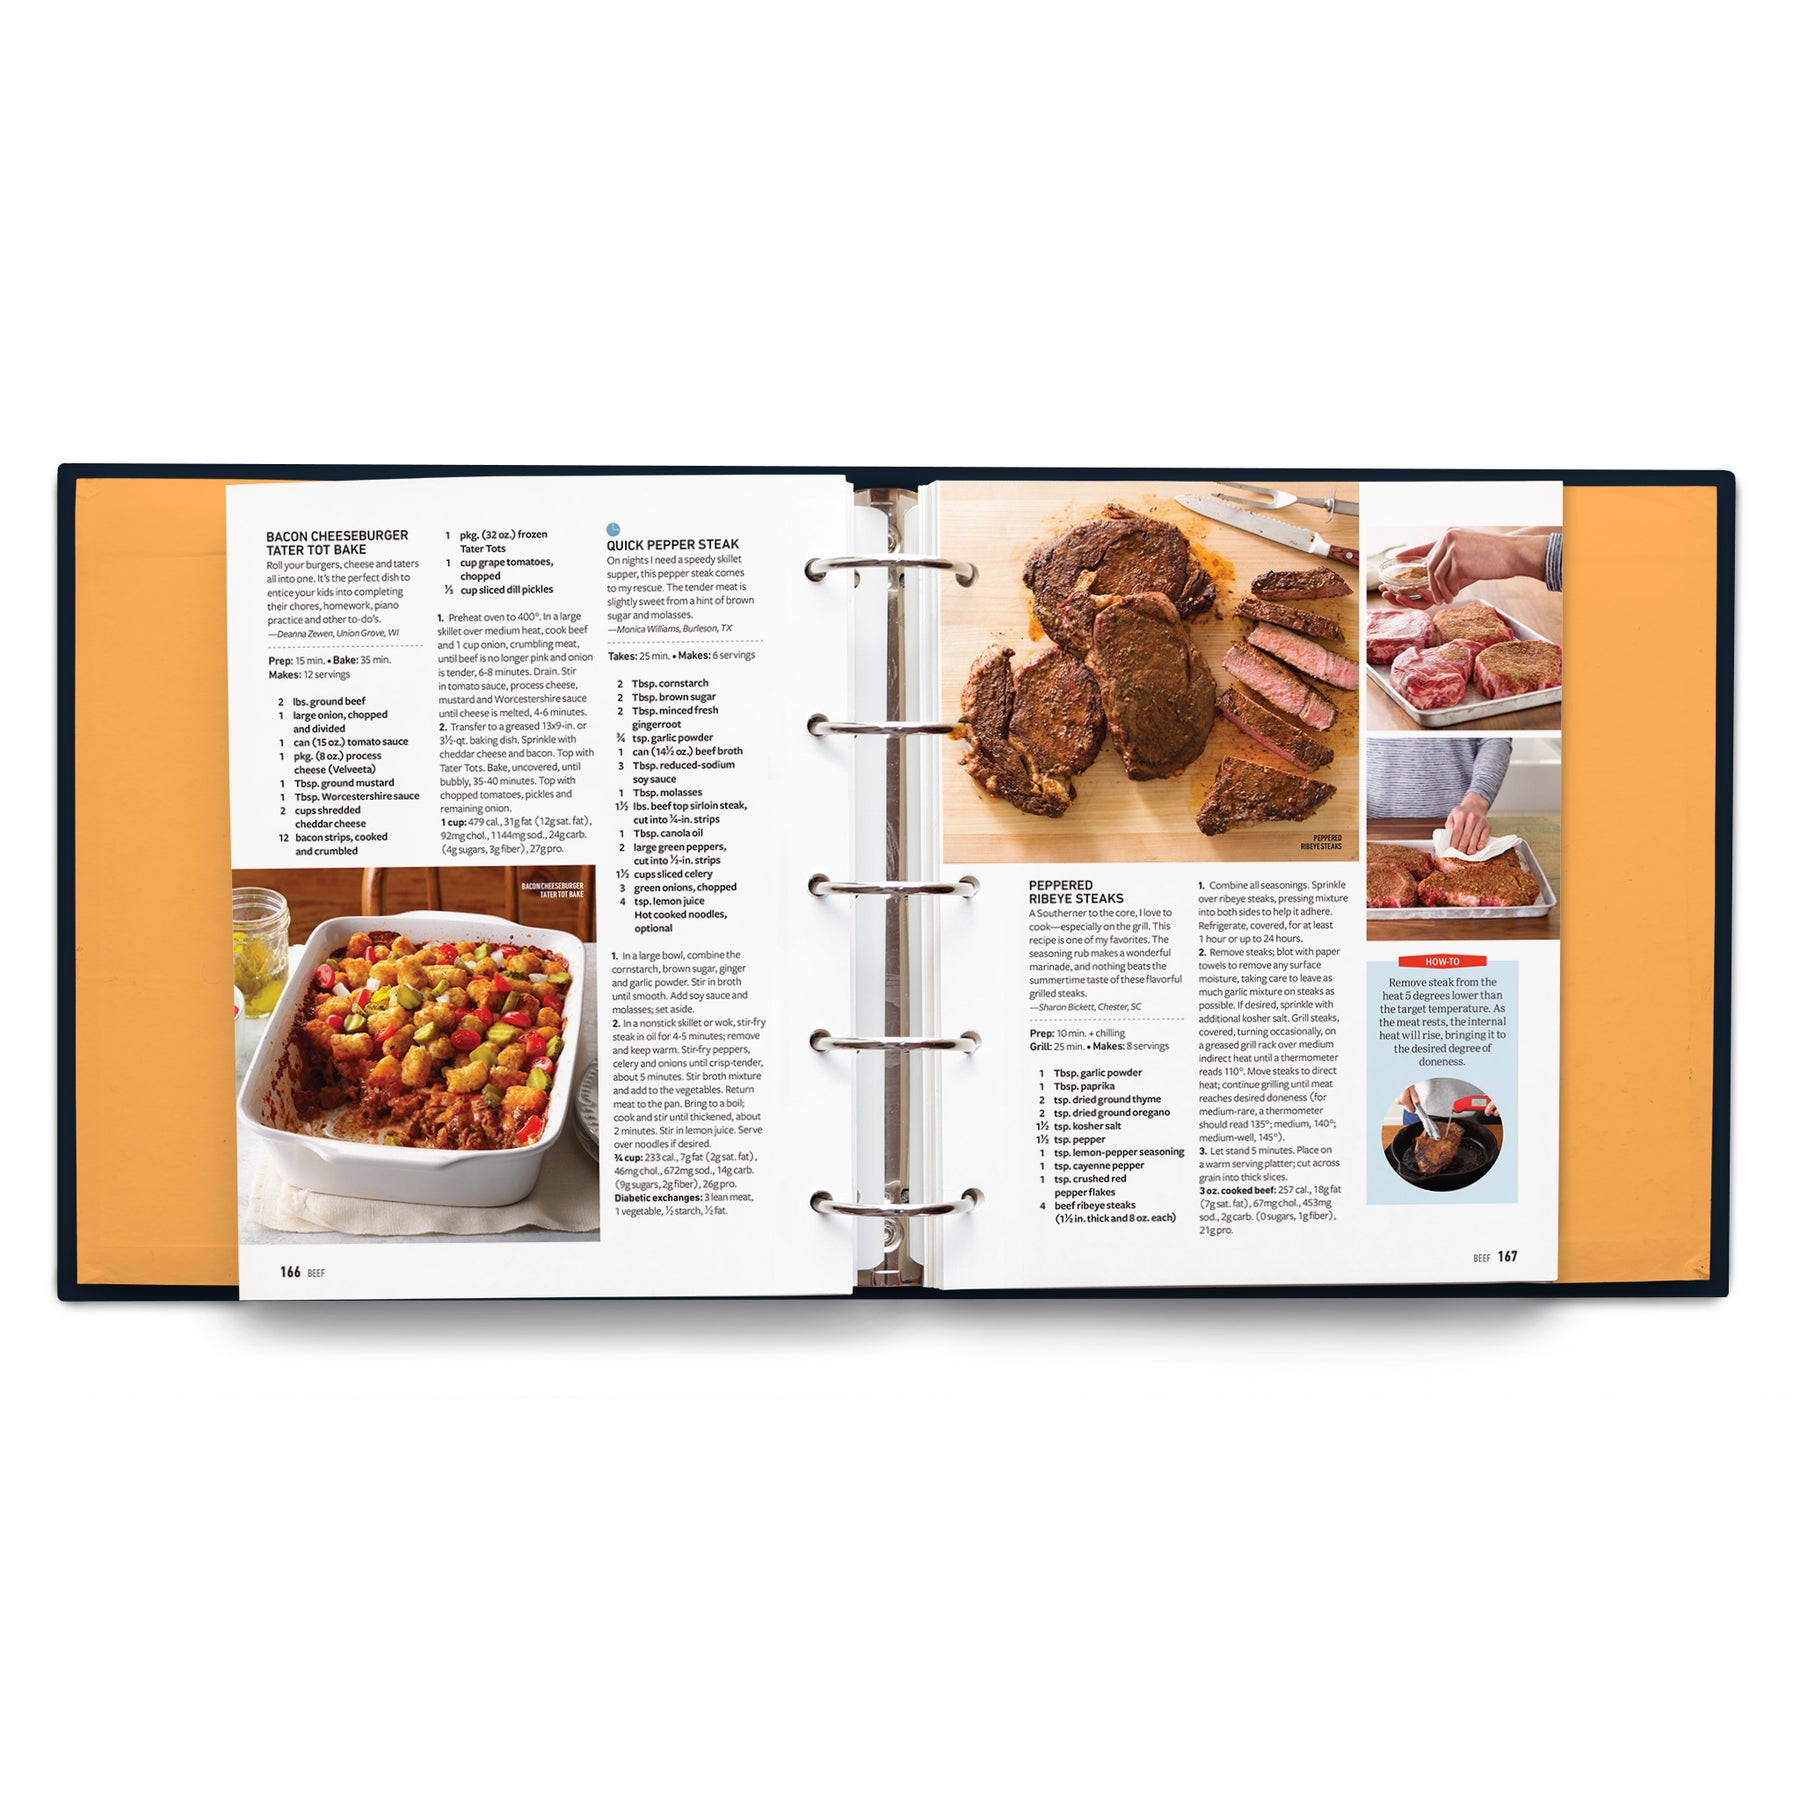 Taste of Home Cookbook (5th Edition) Shop Taste of Home